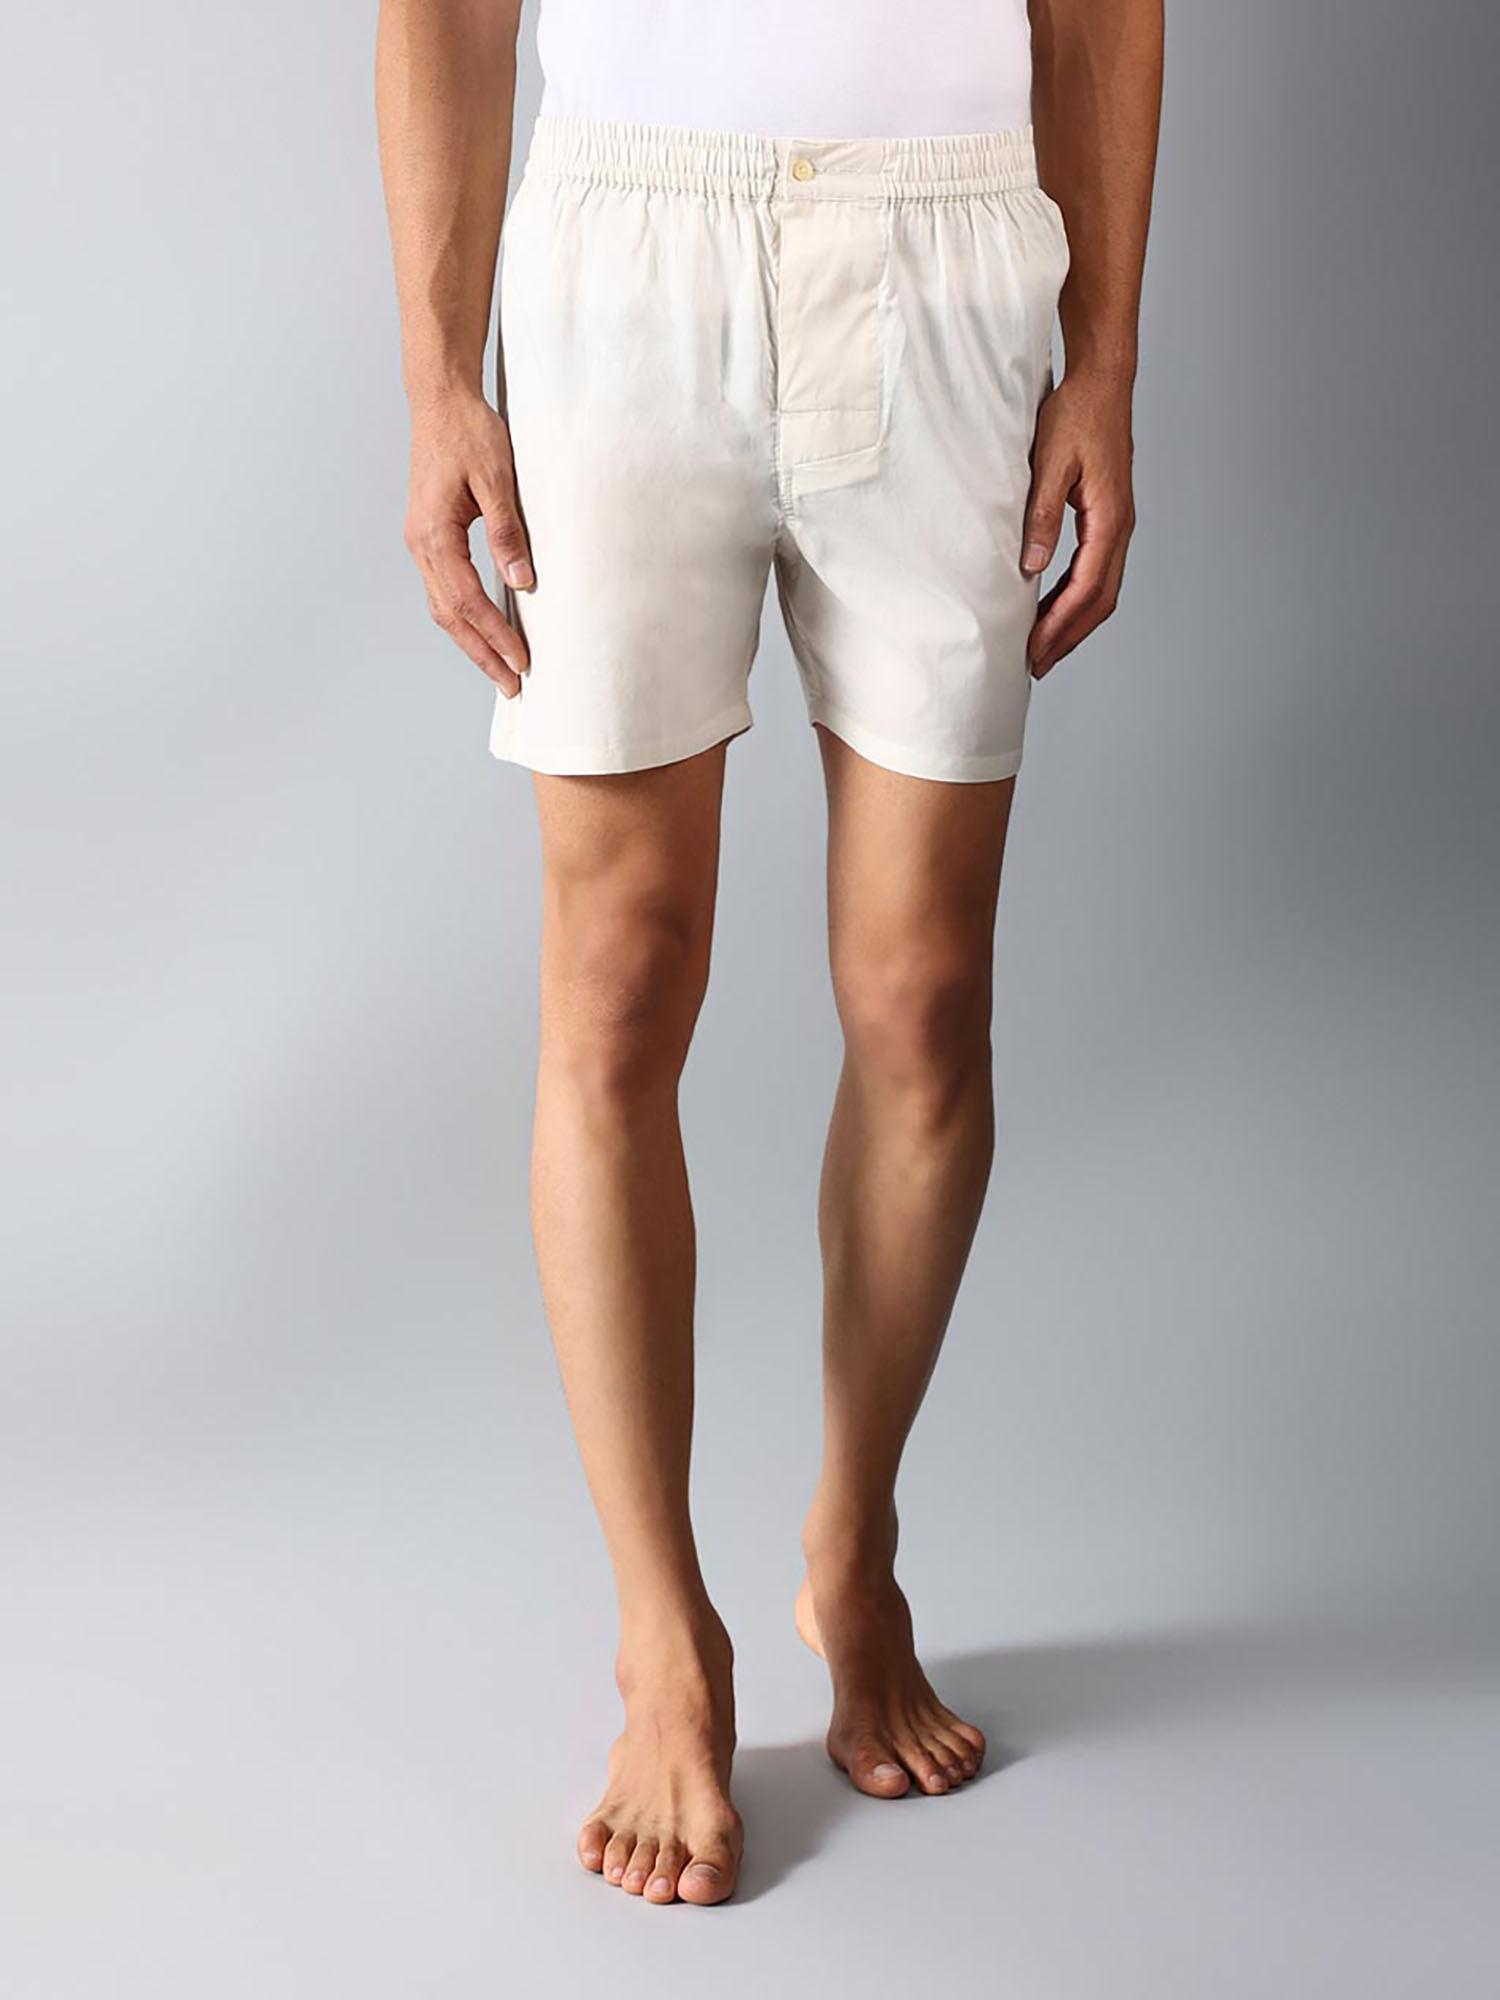 off-white-cotton-boxer-shorts